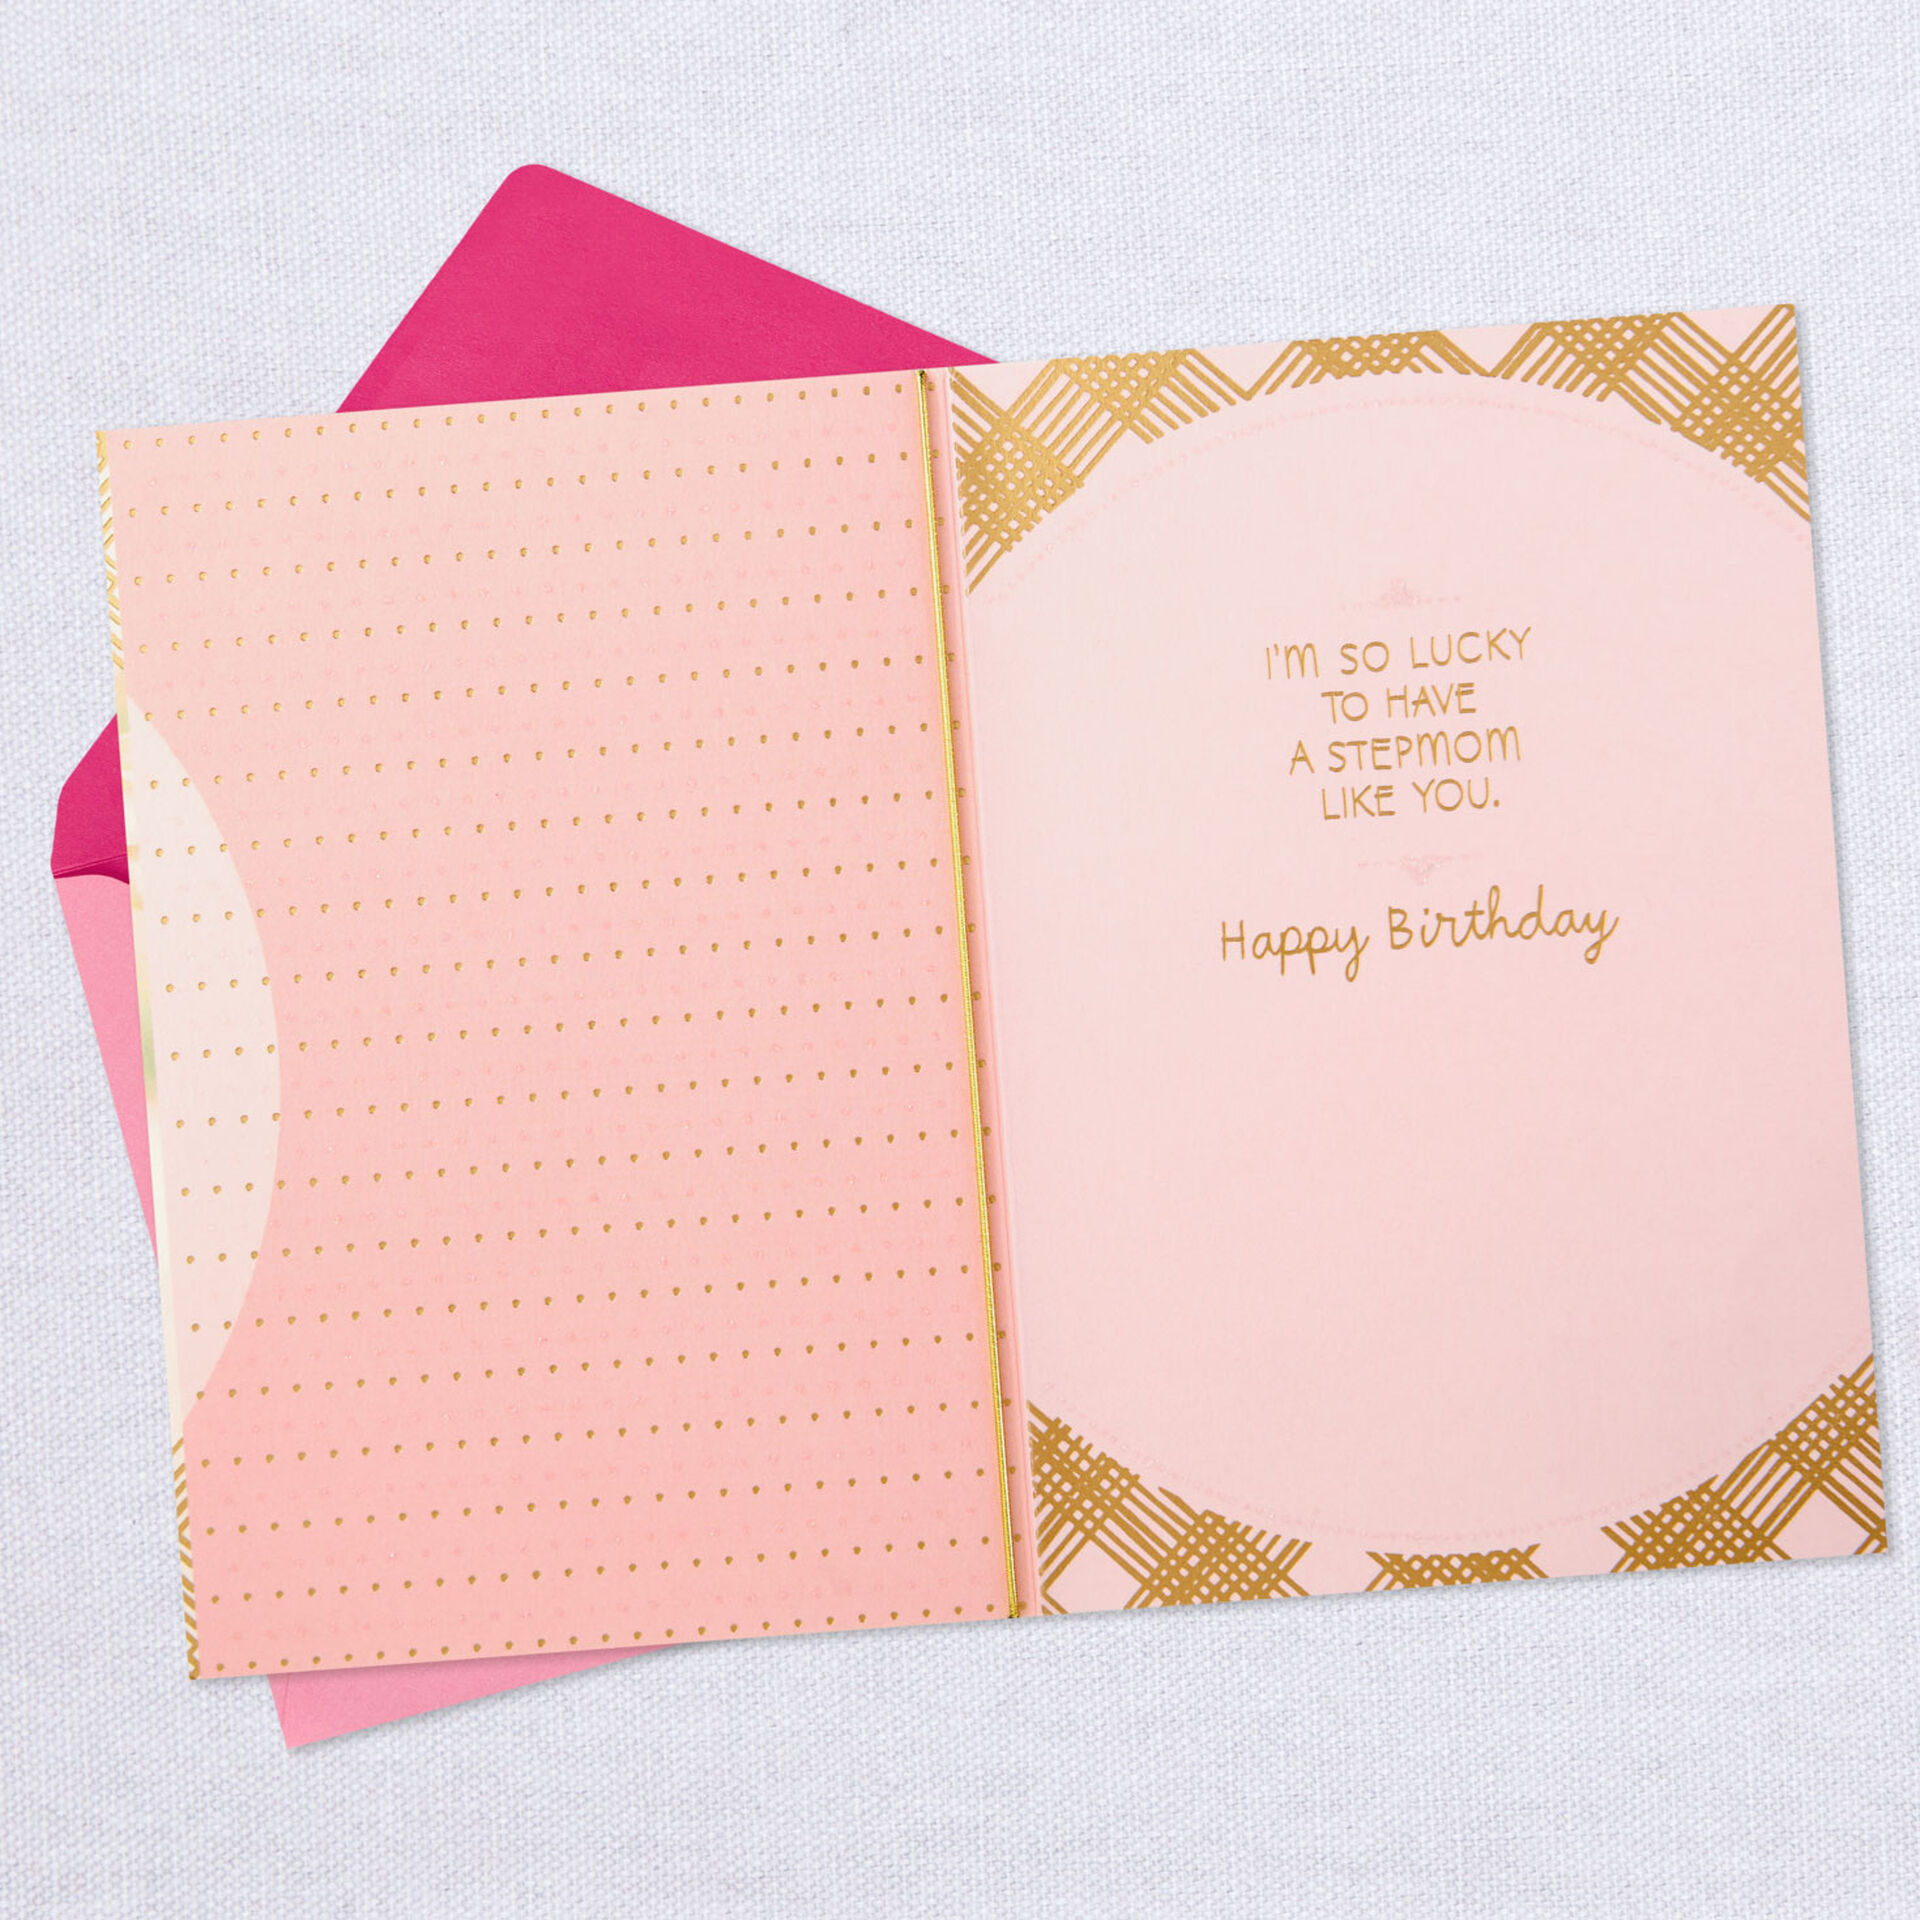 Pink-Flowers-in-Jar-Birthday-Card-for-Stepmom_499FBD3814_03